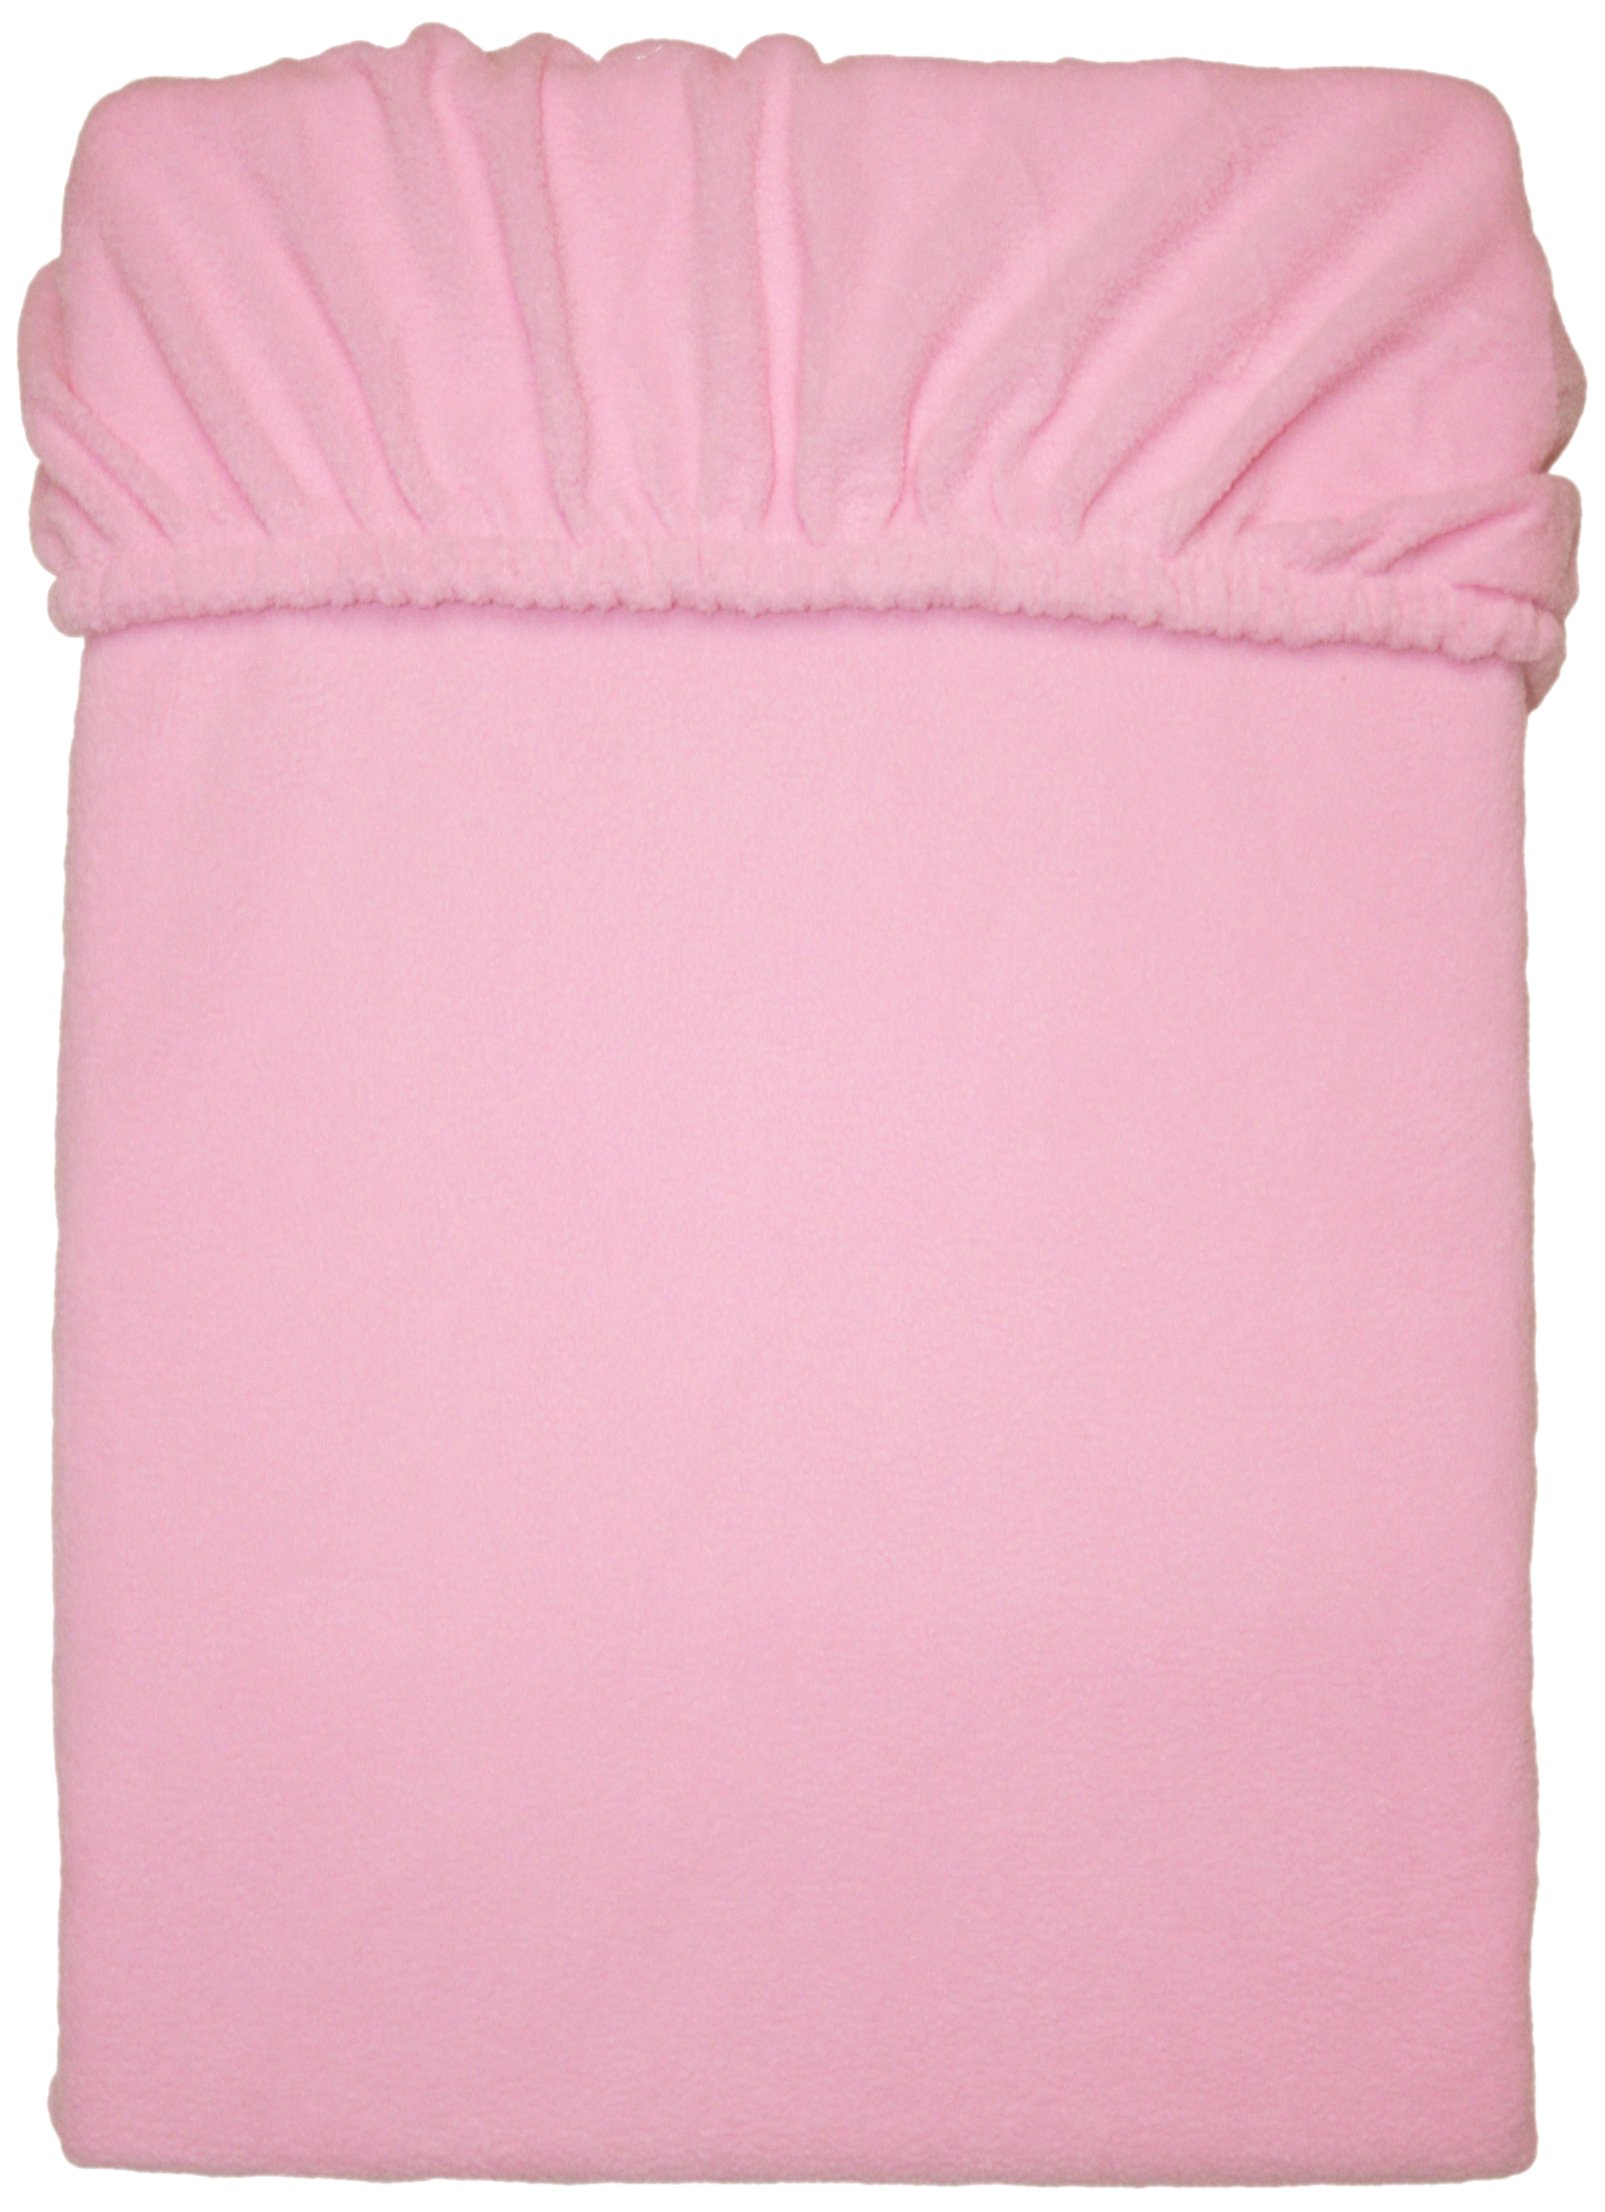 Mesana C-10003/10 Mikrofaser Fleece Spannbetttuch 140 - 160 x 200 cm, kuschelig weich und warm, viele Farben, rosa